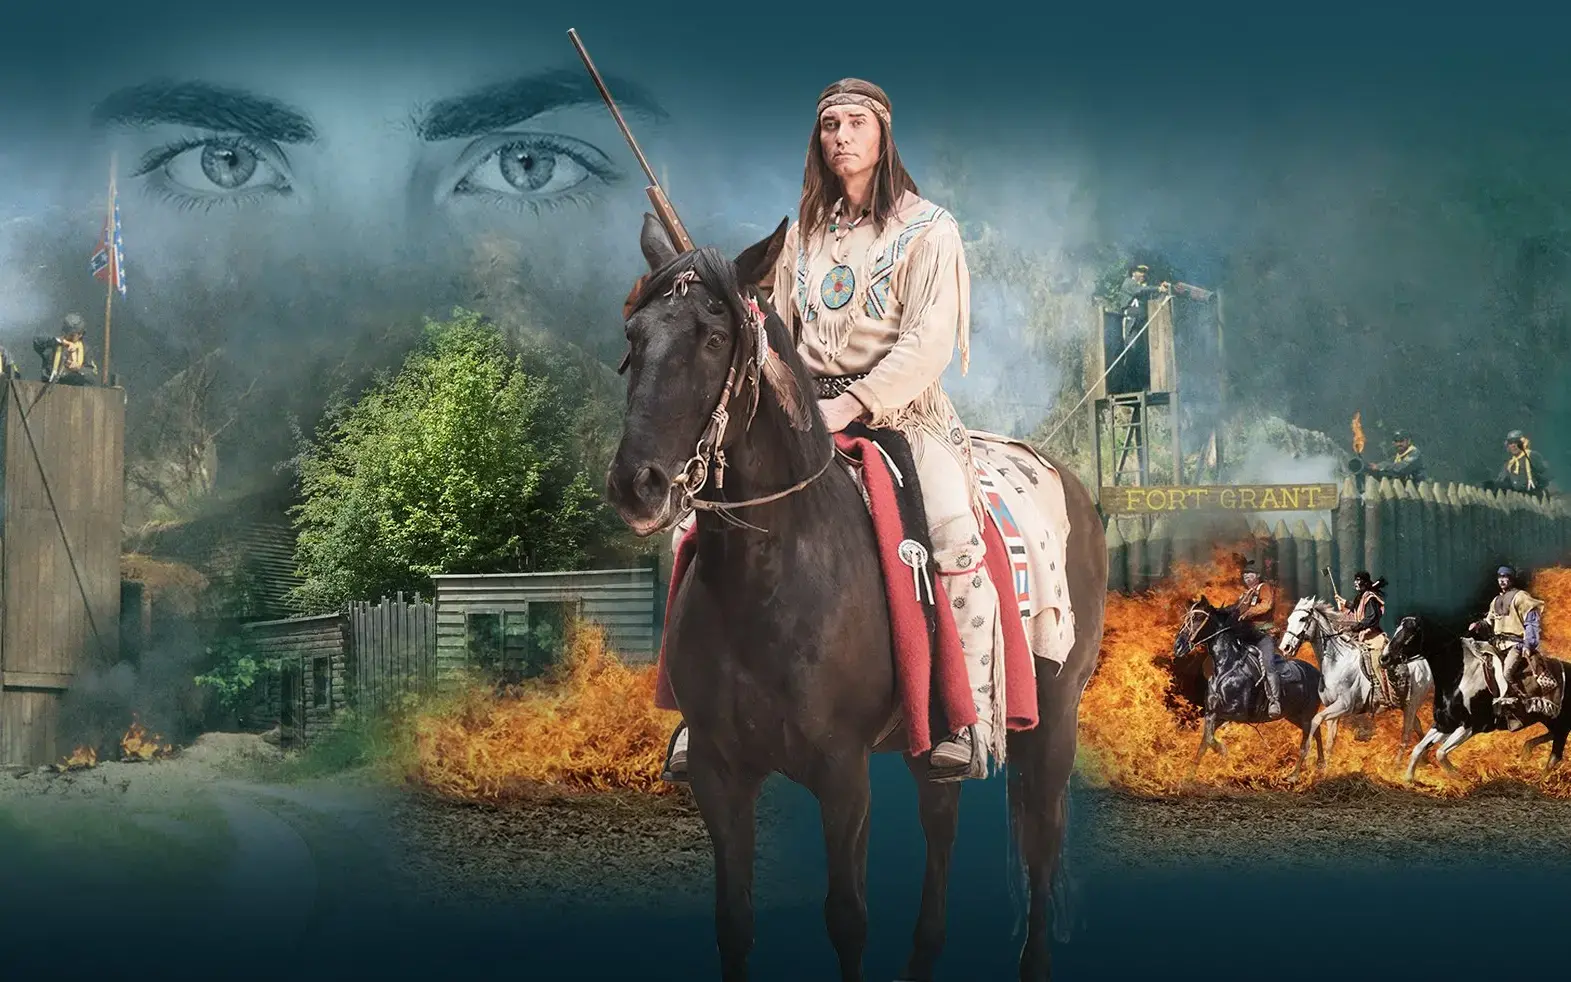 Ein Indianer, welcher Winnetou darstellen soll, auf einem Pferd. Im Hintergrund ein Bild von der Kulisse in Elspe mit Cowboys, Pferden, Türmen und Zäunen.